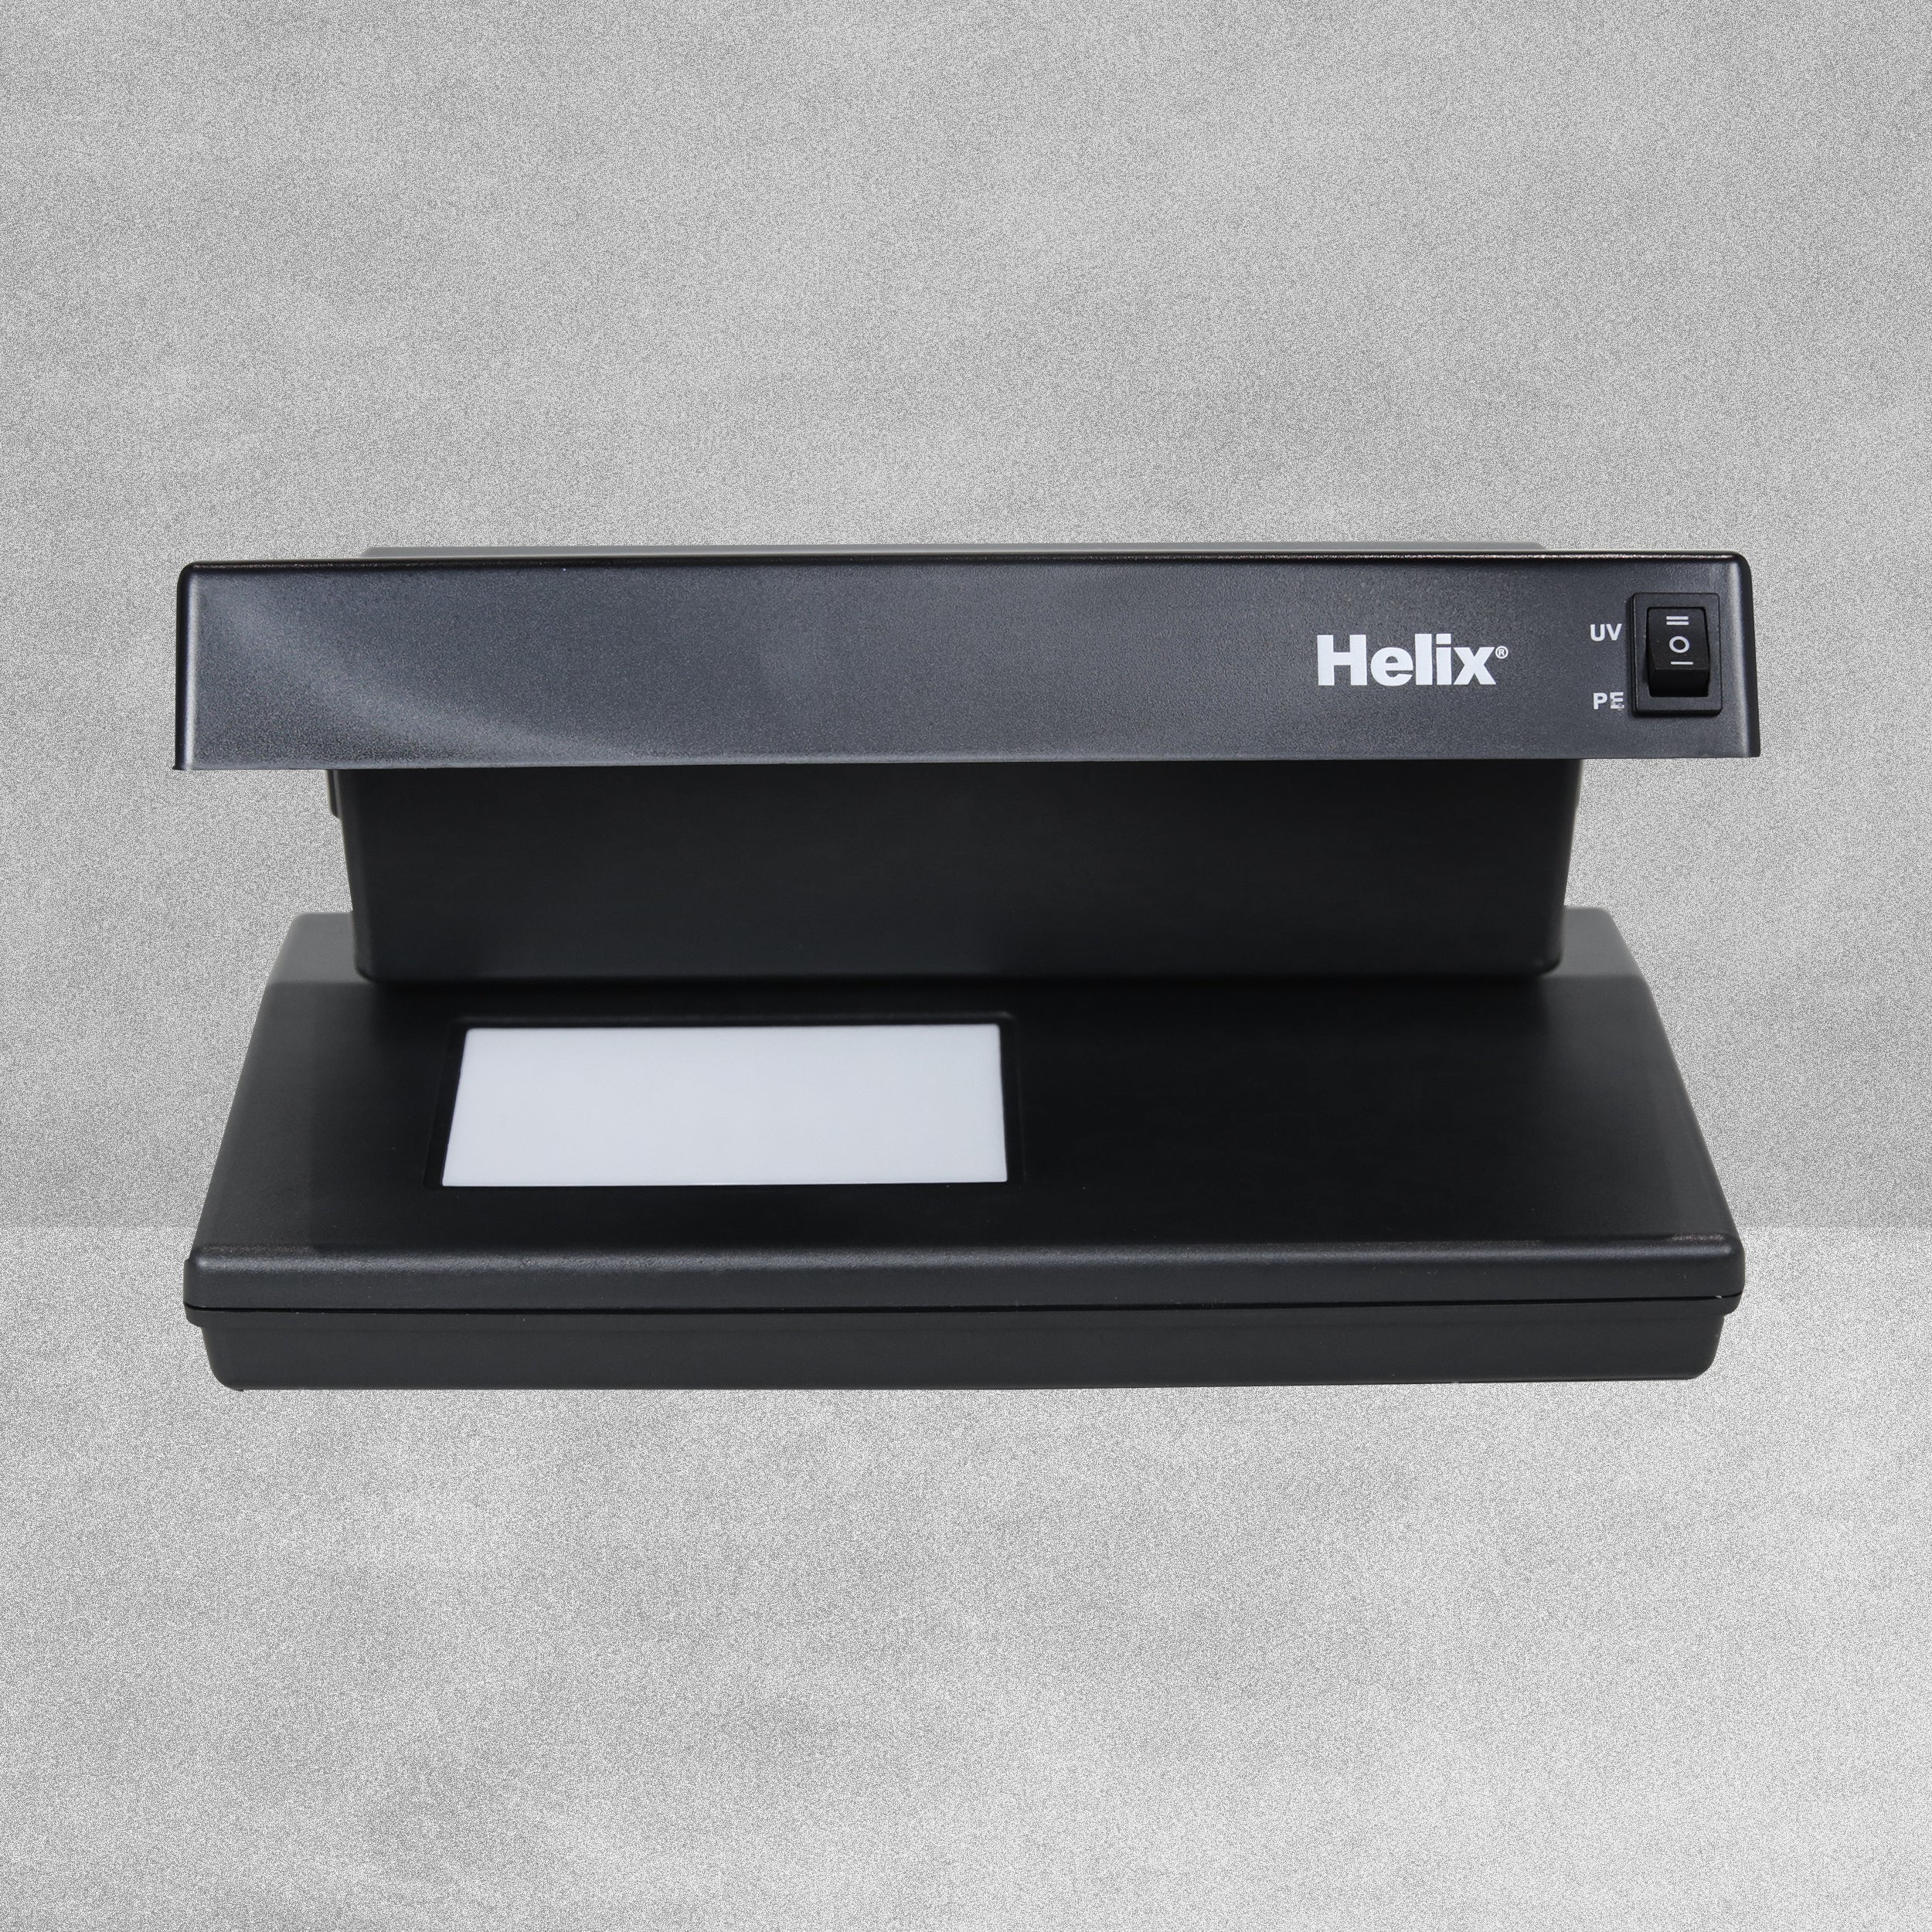 Helix Fraudulent Bank Note Desktop Detector